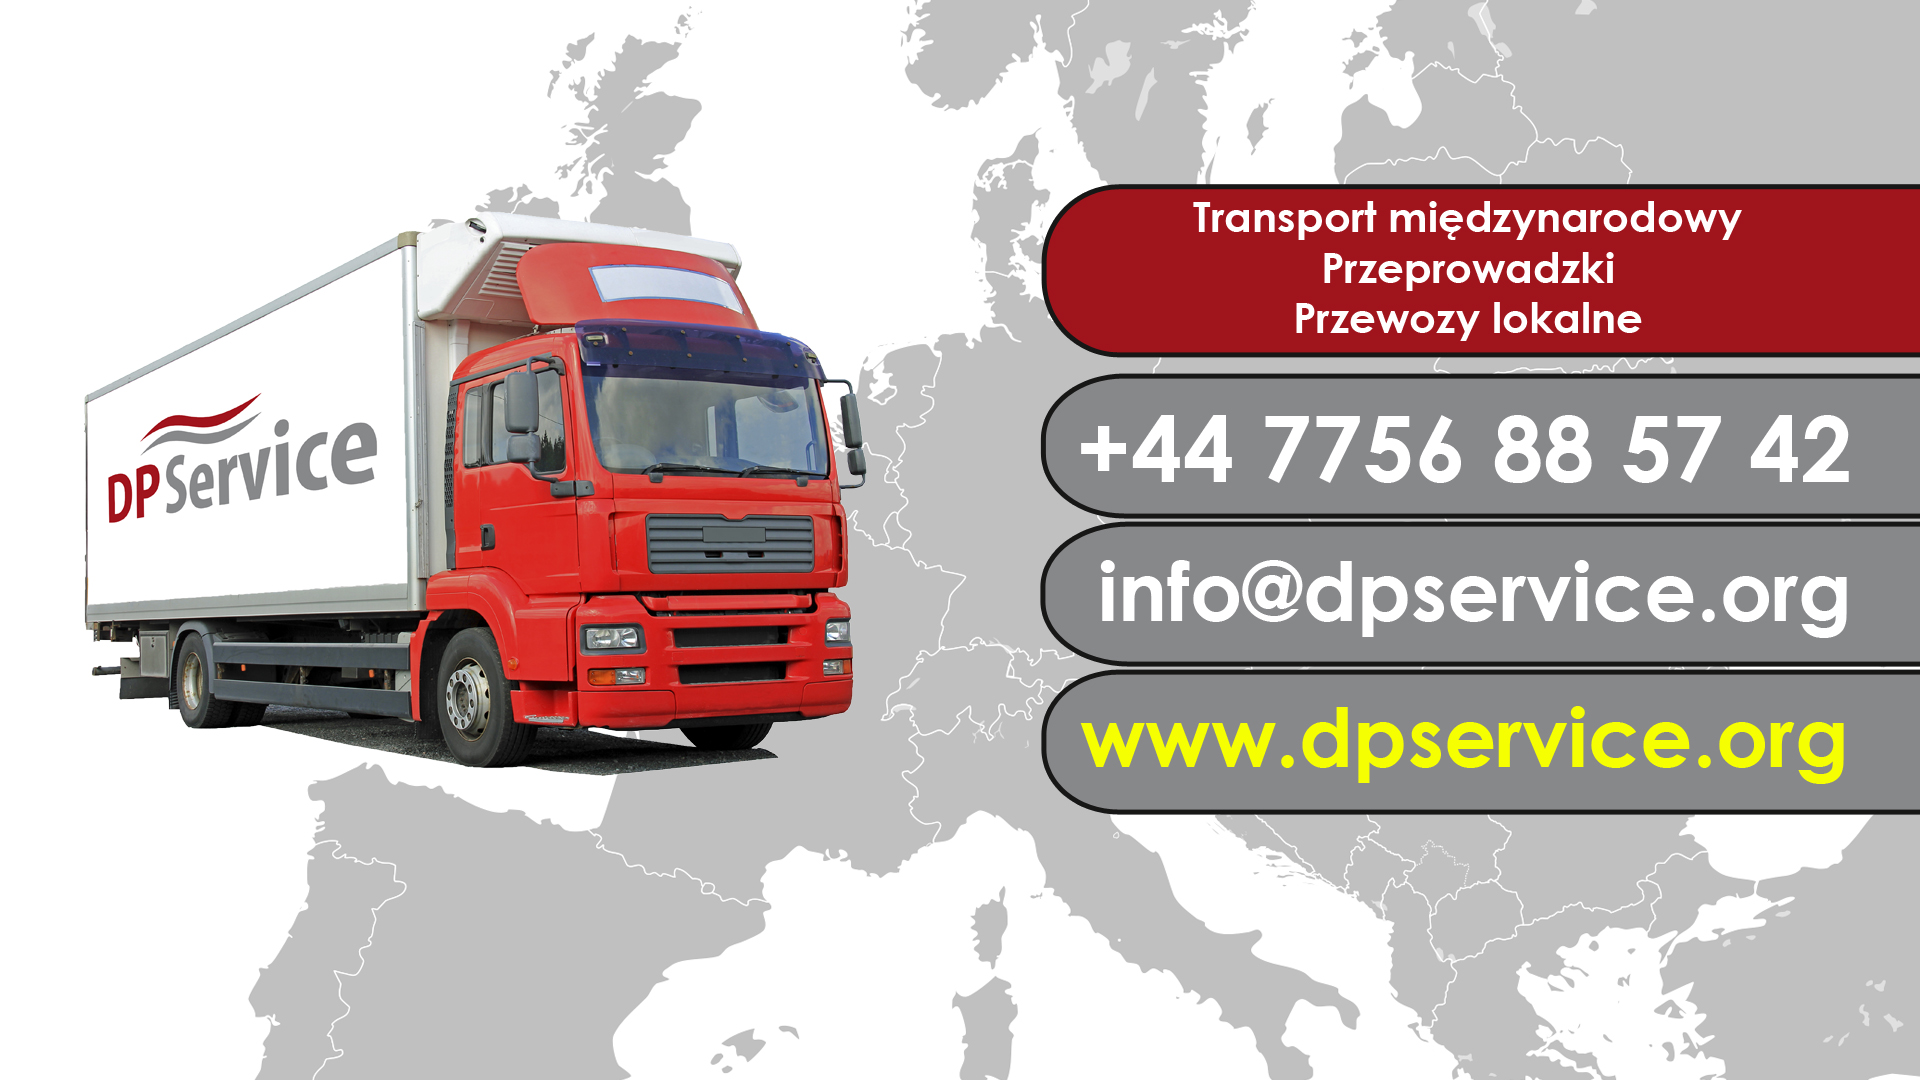 Przeprowadzki Niemcy - Polska i transport maszyn międzynarodowy. 